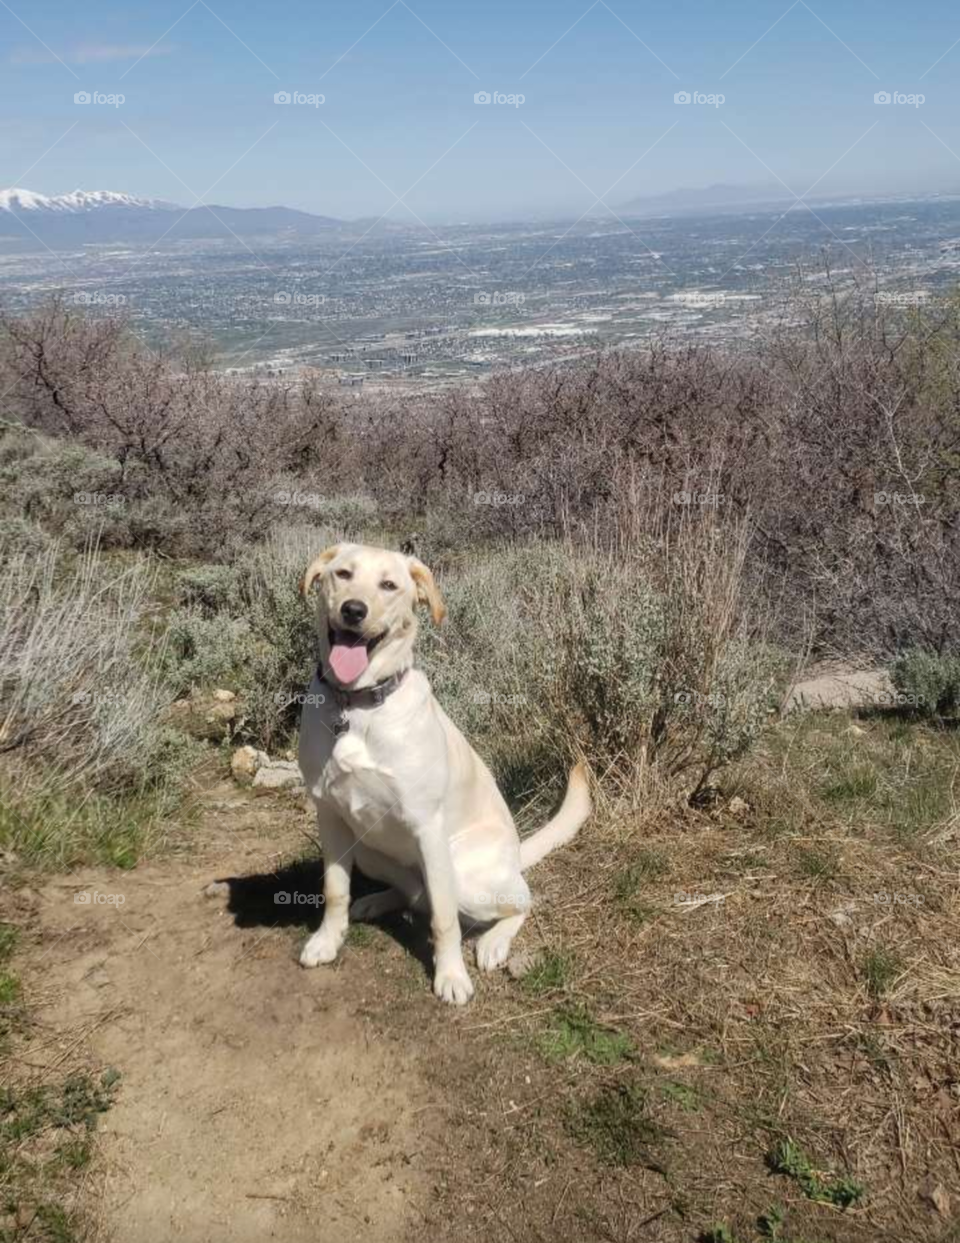 good girl on hike